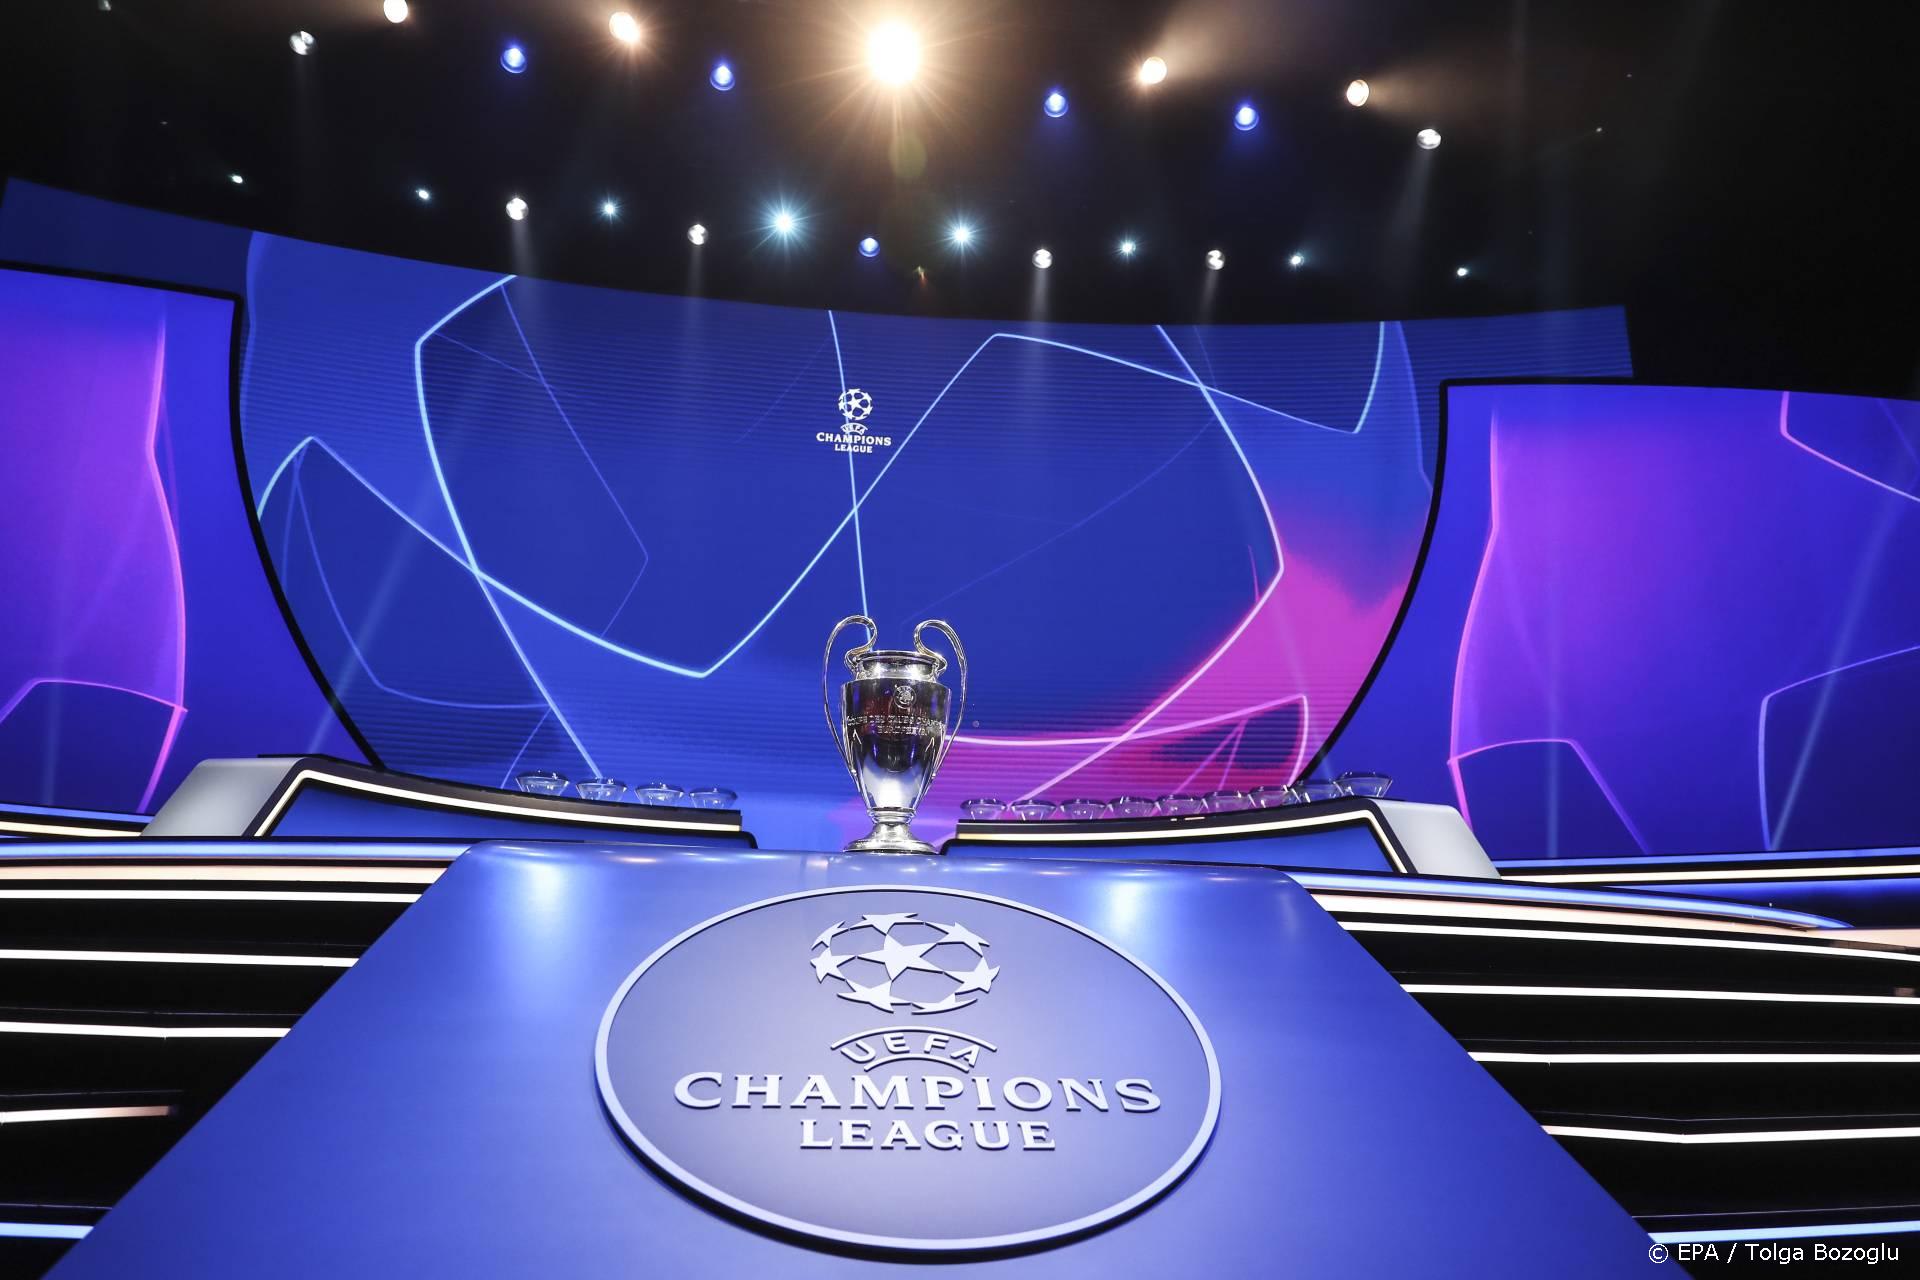 Akkoord over nieuwe opzet Champions League: extra tickets en meer wedstrijden